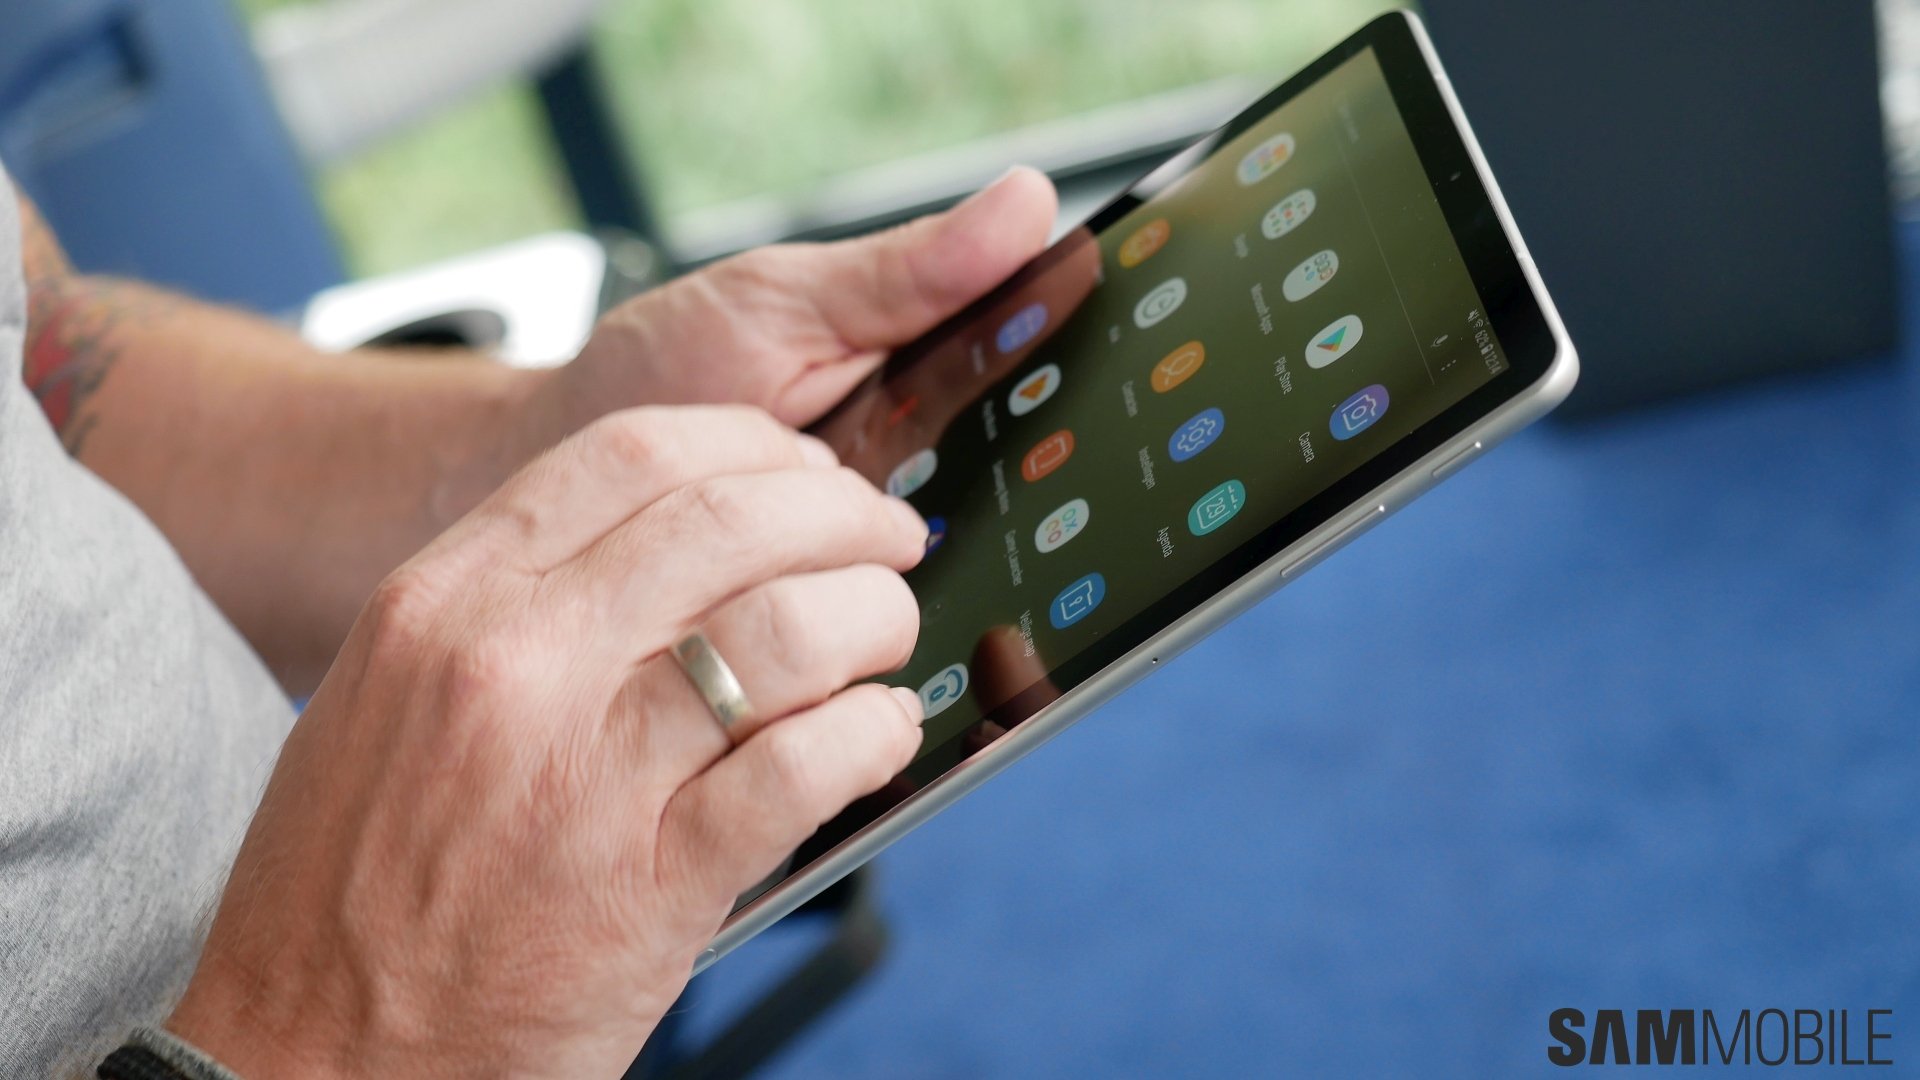 Il nuovo Samsung Galaxy Tab A 8.4 baratta la S-Pen per un paio di speaker, affare o fregatura? (foto)